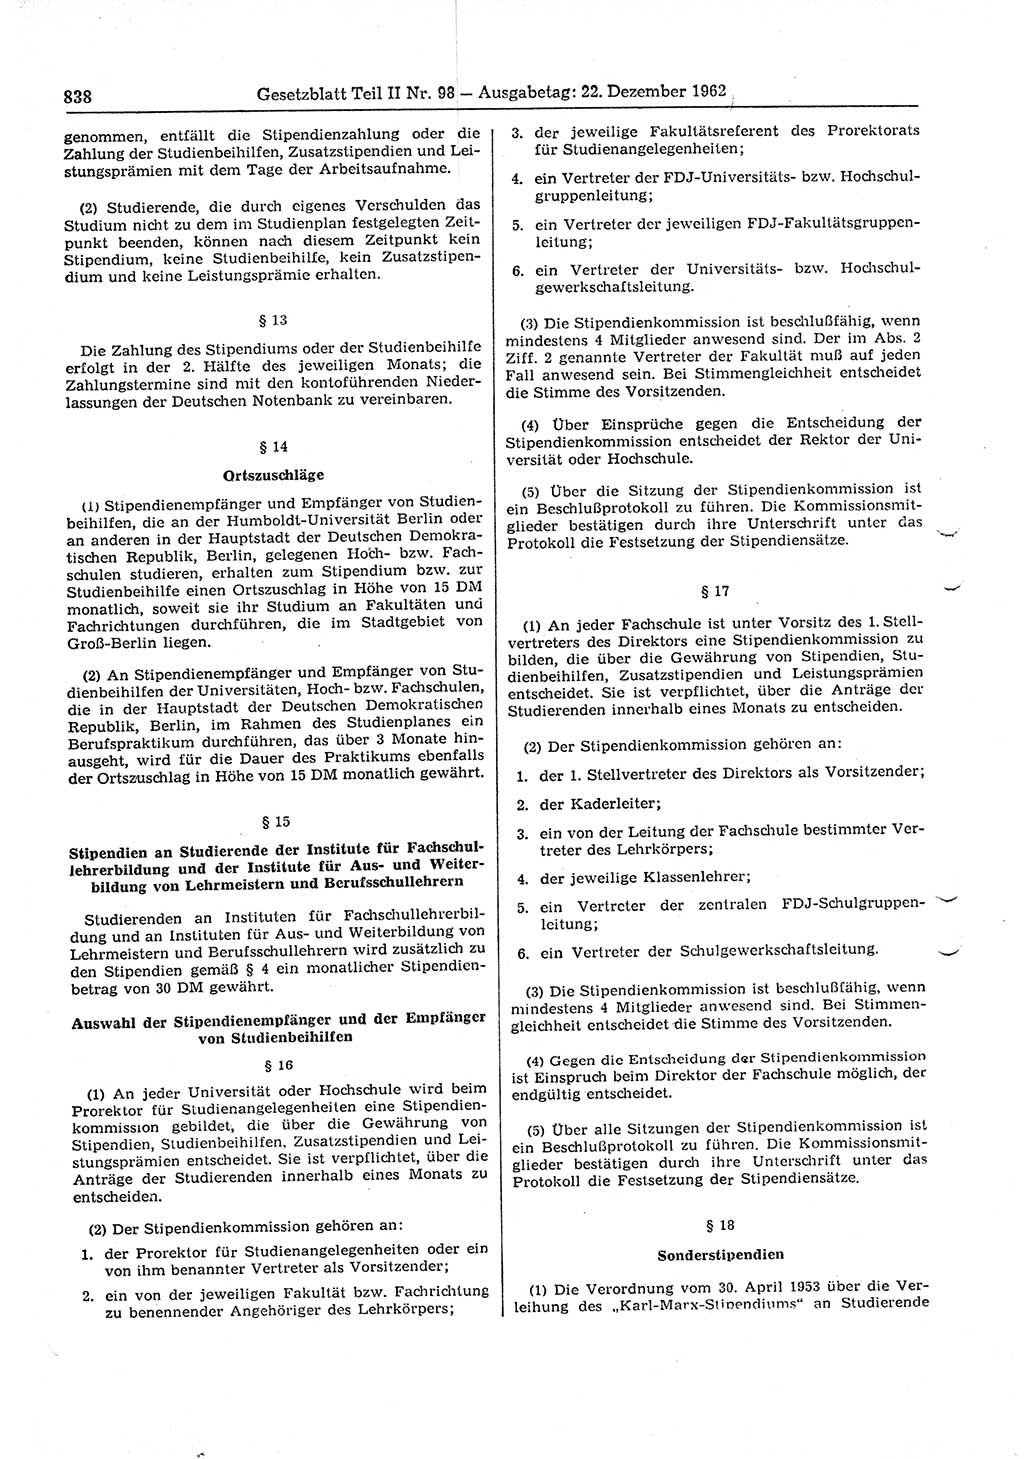 Gesetzblatt (GBl.) der Deutschen Demokratischen Republik (DDR) Teil ⅠⅠ 1962, Seite 838 (GBl. DDR ⅠⅠ 1962, S. 838)